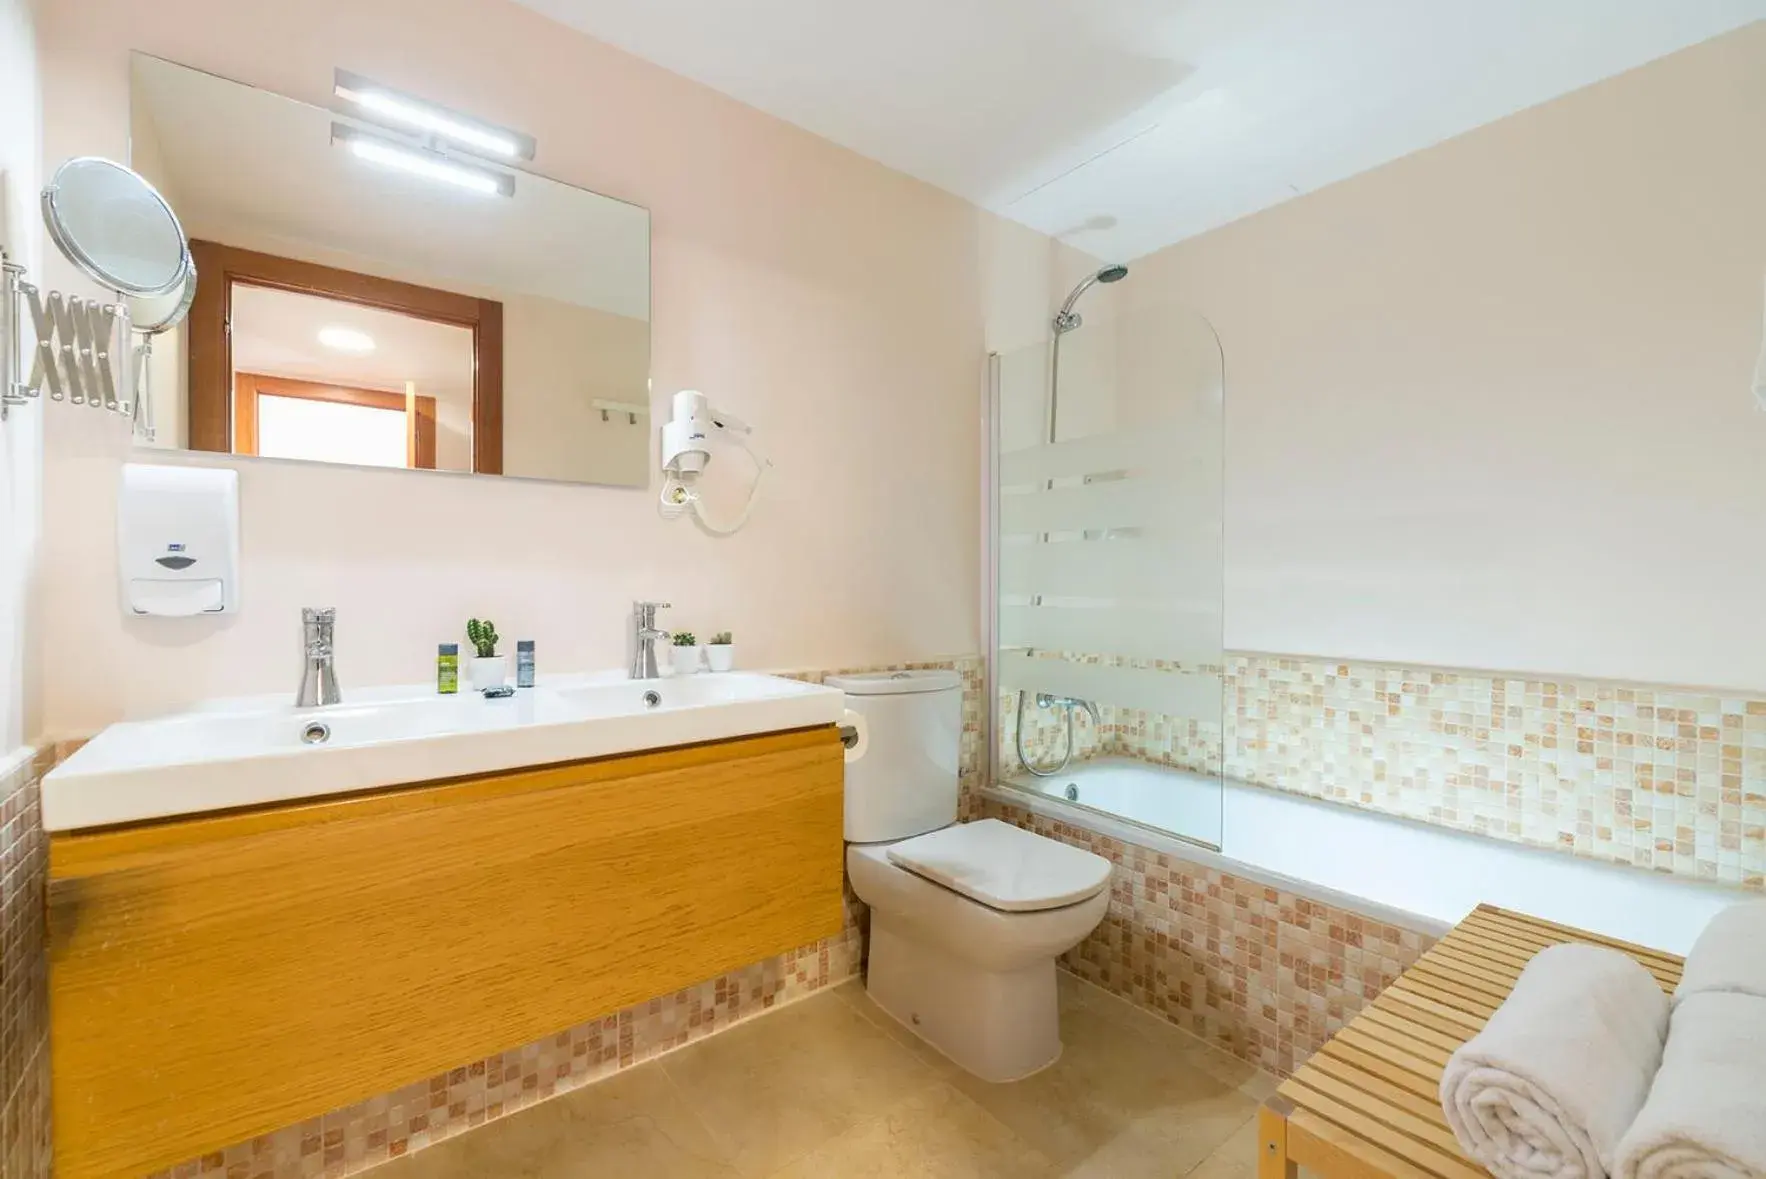 Bathroom in Apartaments Els Llorers